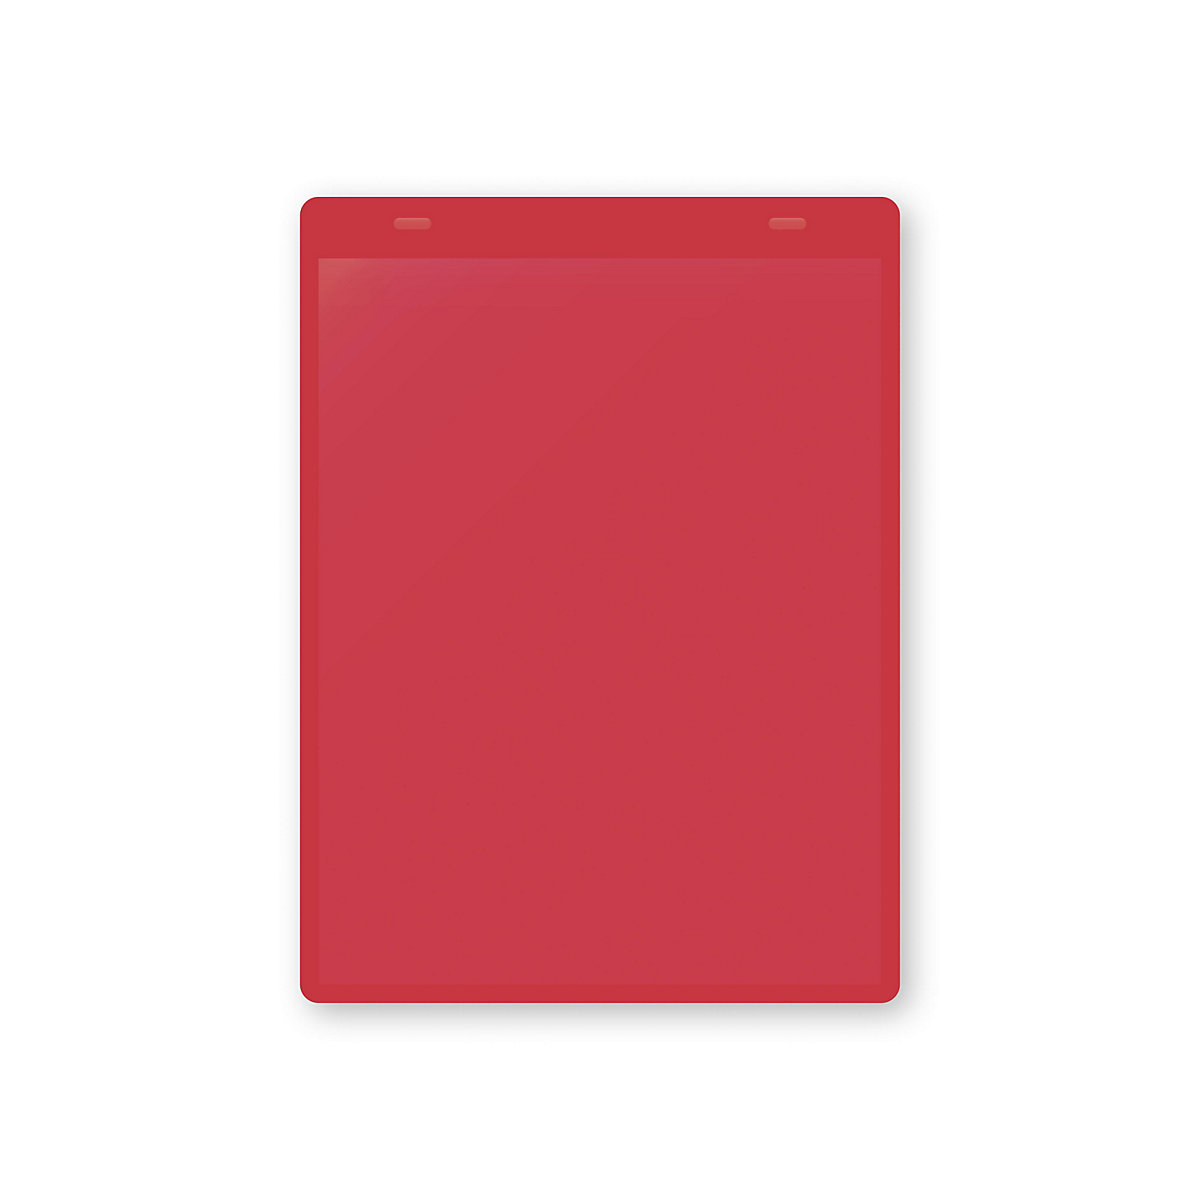 Dokumentumtartó tasakok akasztópánttal, DIN A5, álló, cs. e. 50 db, piros